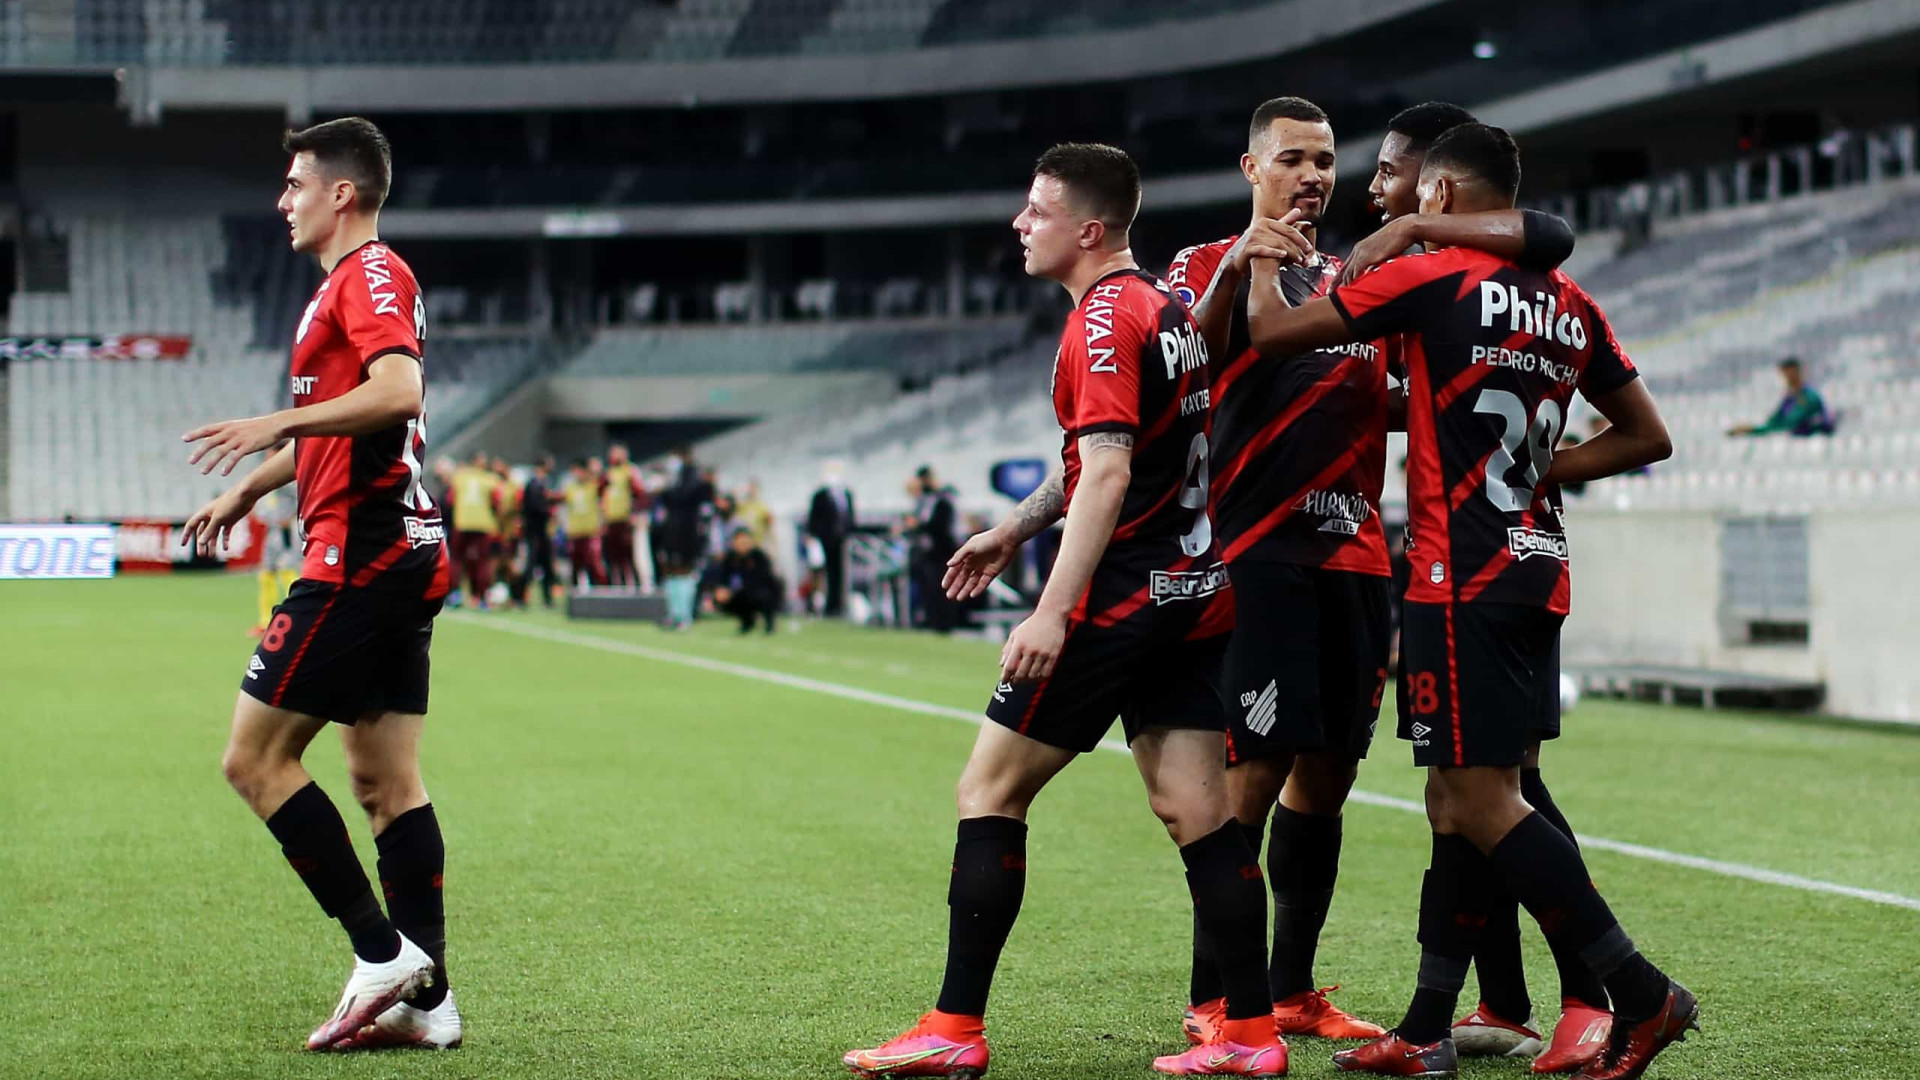 Athletico-PR elimina Flamengo e está na final da Copa do Brasil